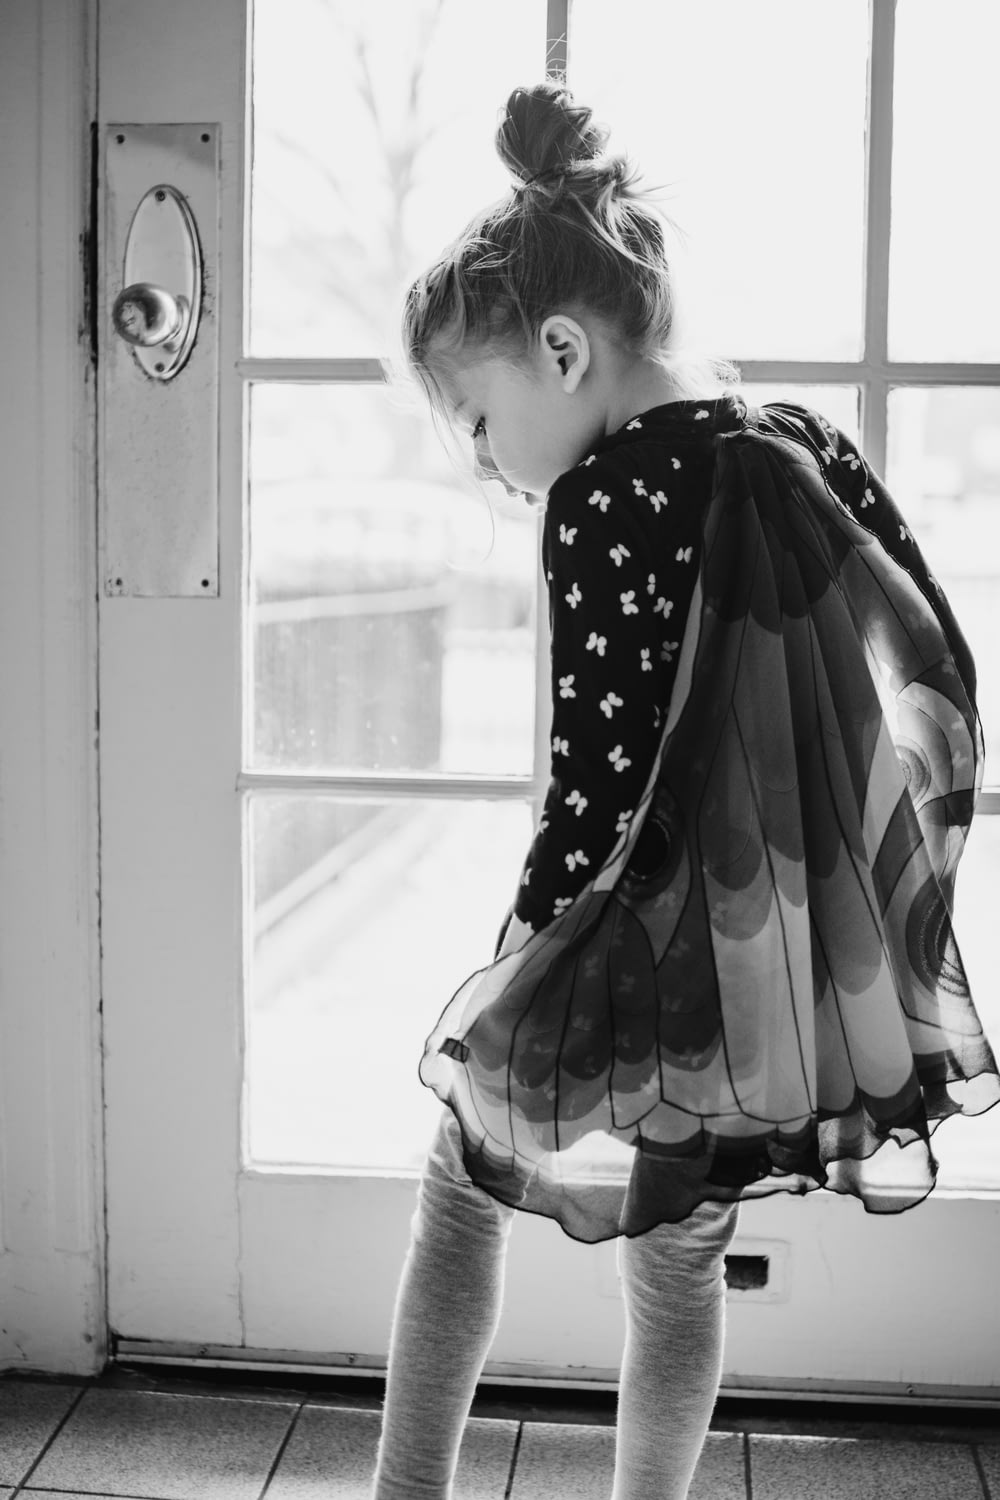 水玉模様のドレスを着た女の子が窓の外を見ているグレースケールの写真